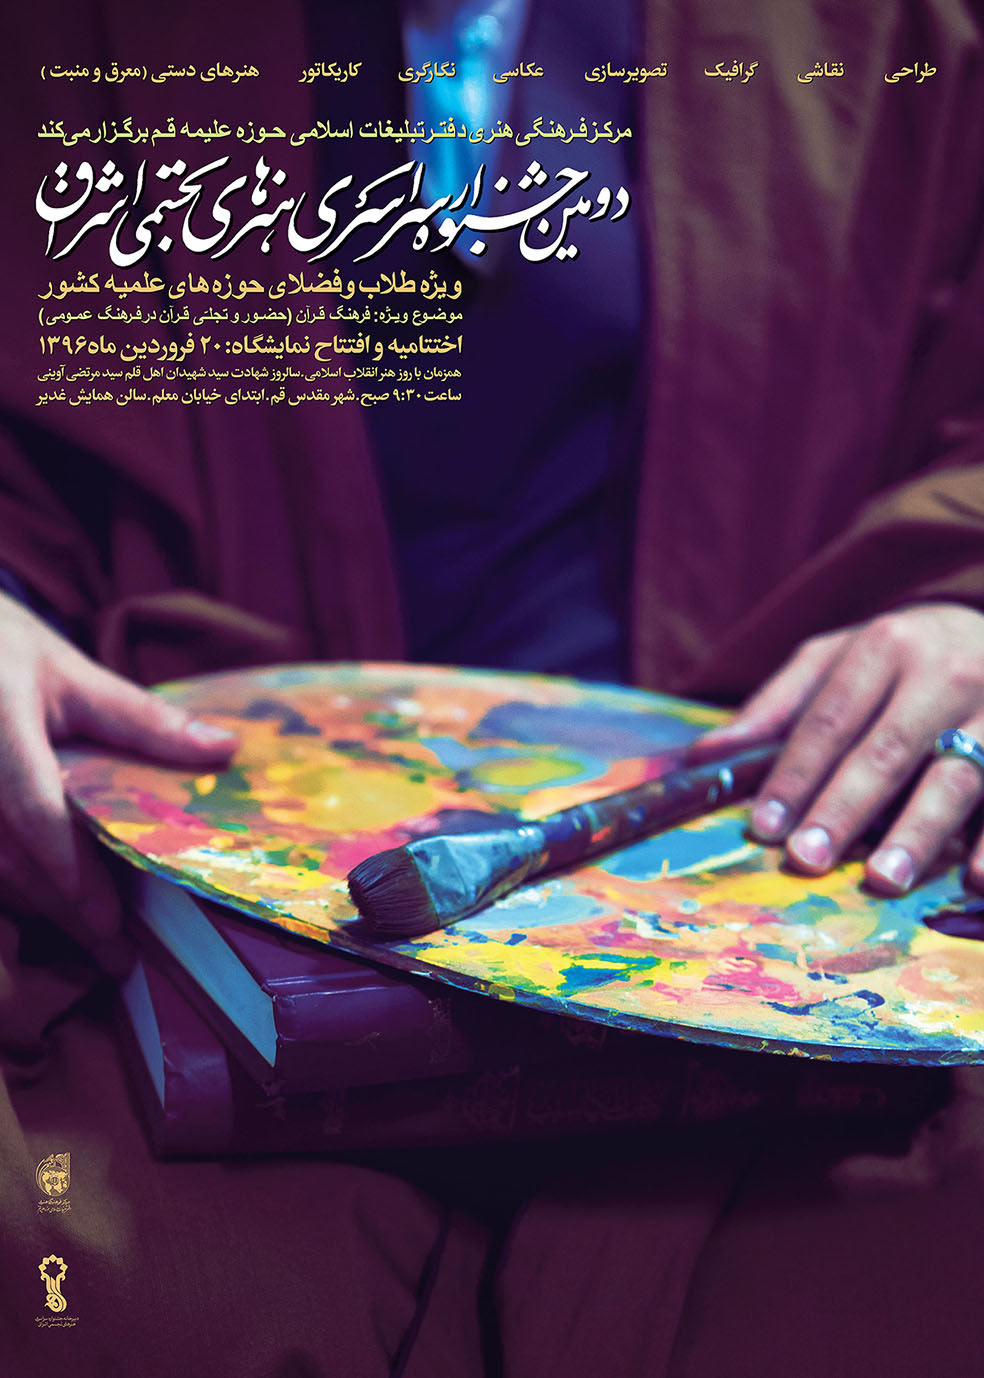 دومین جشنواره سراسری هنرهای تجسمی اشراق برگزار می شود